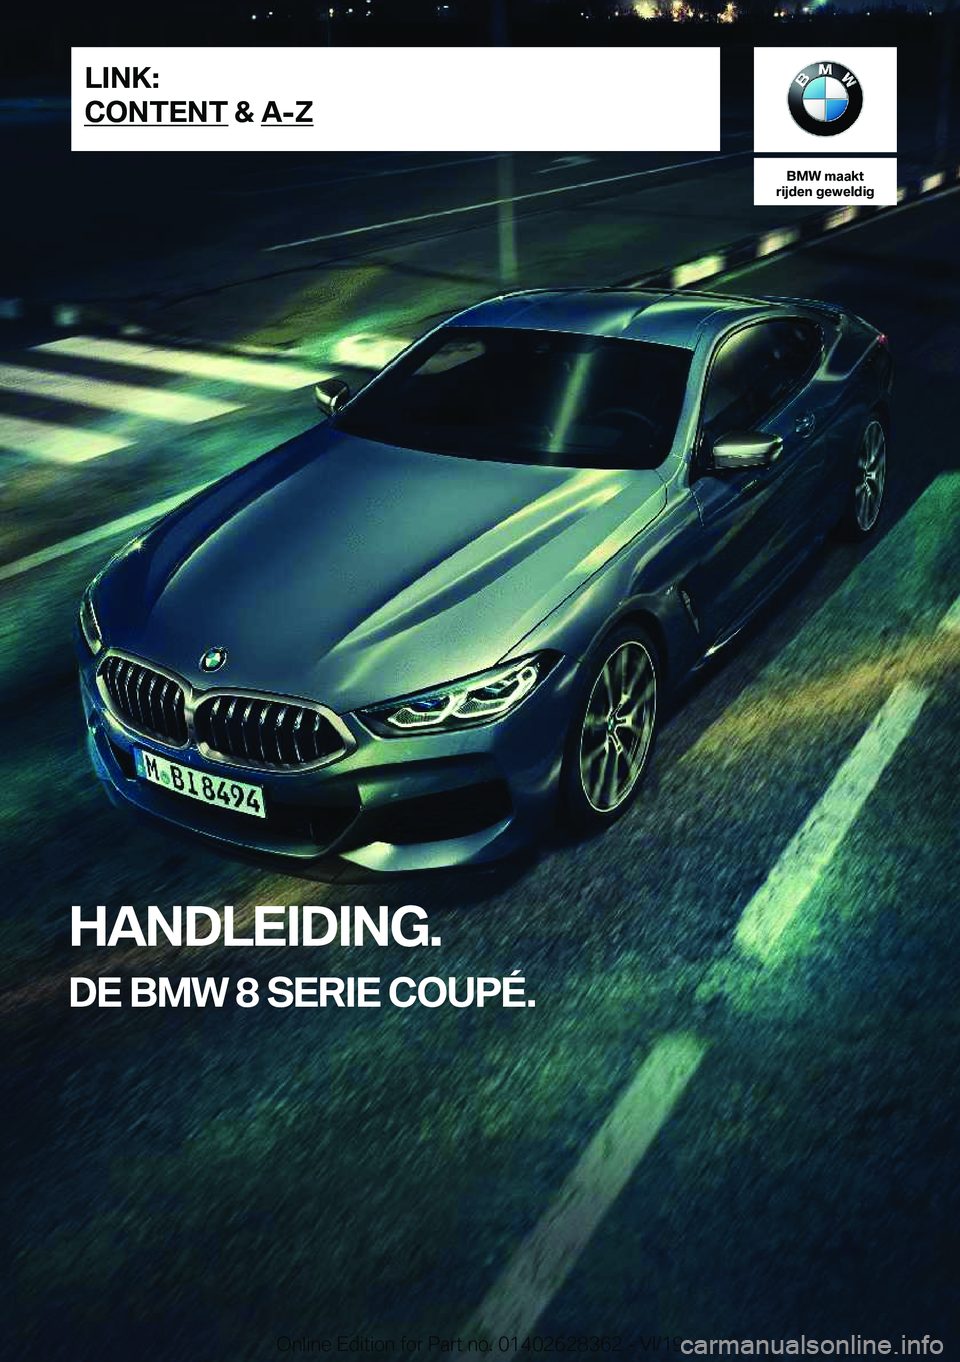 BMW 8 SERIES COUPE 2020  Instructieboekjes (in Dutch) �B�M�W��m�a�a�k�t
�r�i�j�d�e�n��g�e�w�e�l�d�i�g
�H�A�N�D�L�E�I�D�I�N�G�.
�D�E��B�M�W��8��S�E�R�I�E��C�O�U�P�